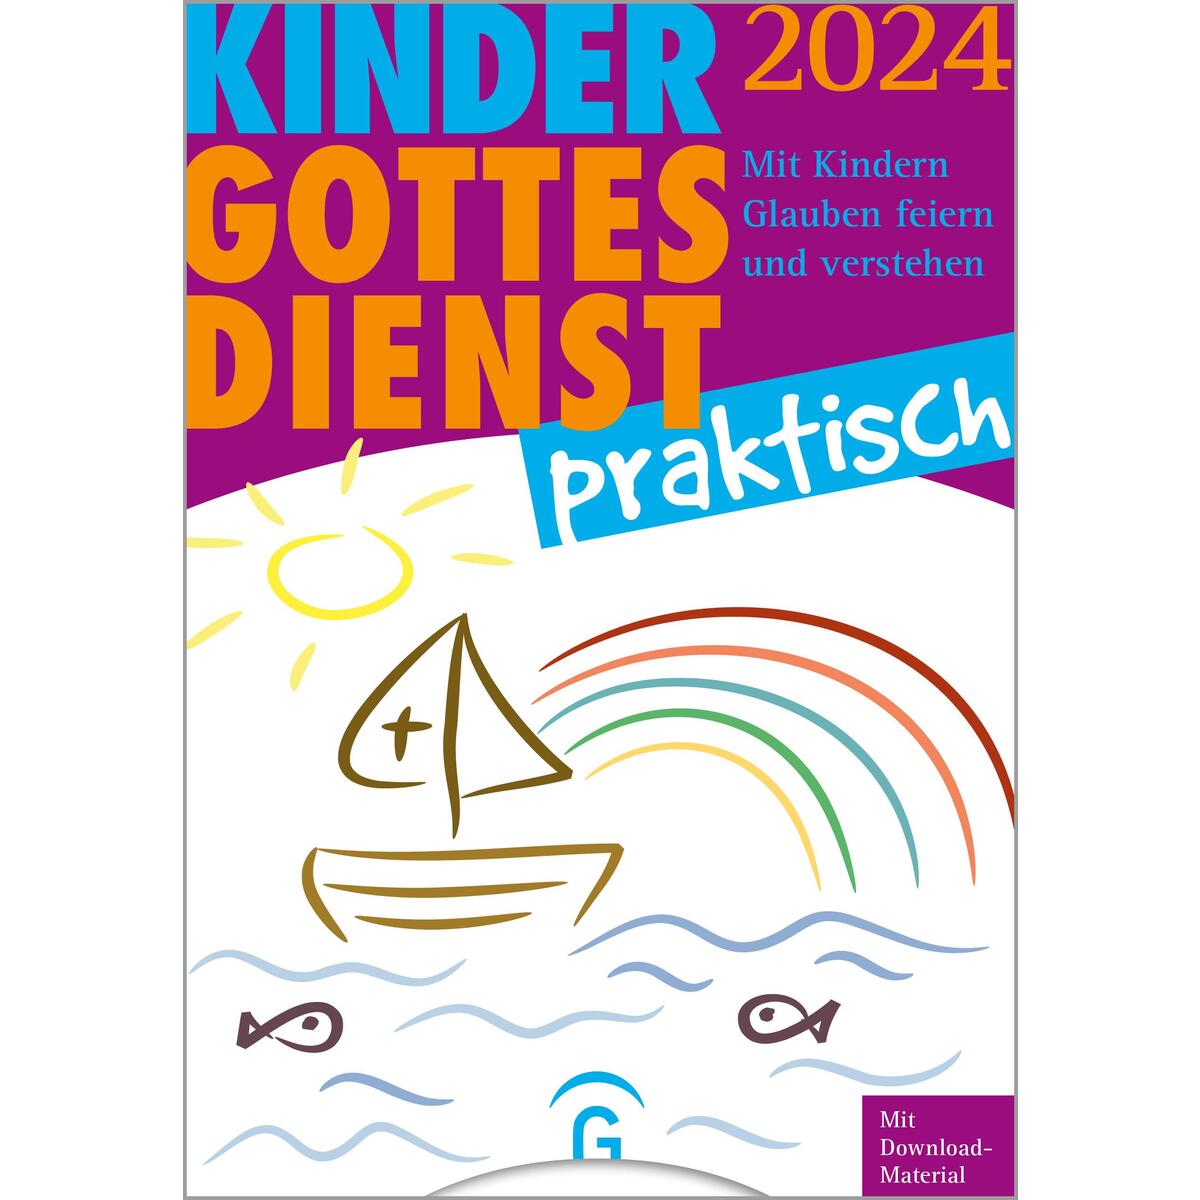 Kindergottesdienst praktisch 2024 von Guetersloher Verlagshaus